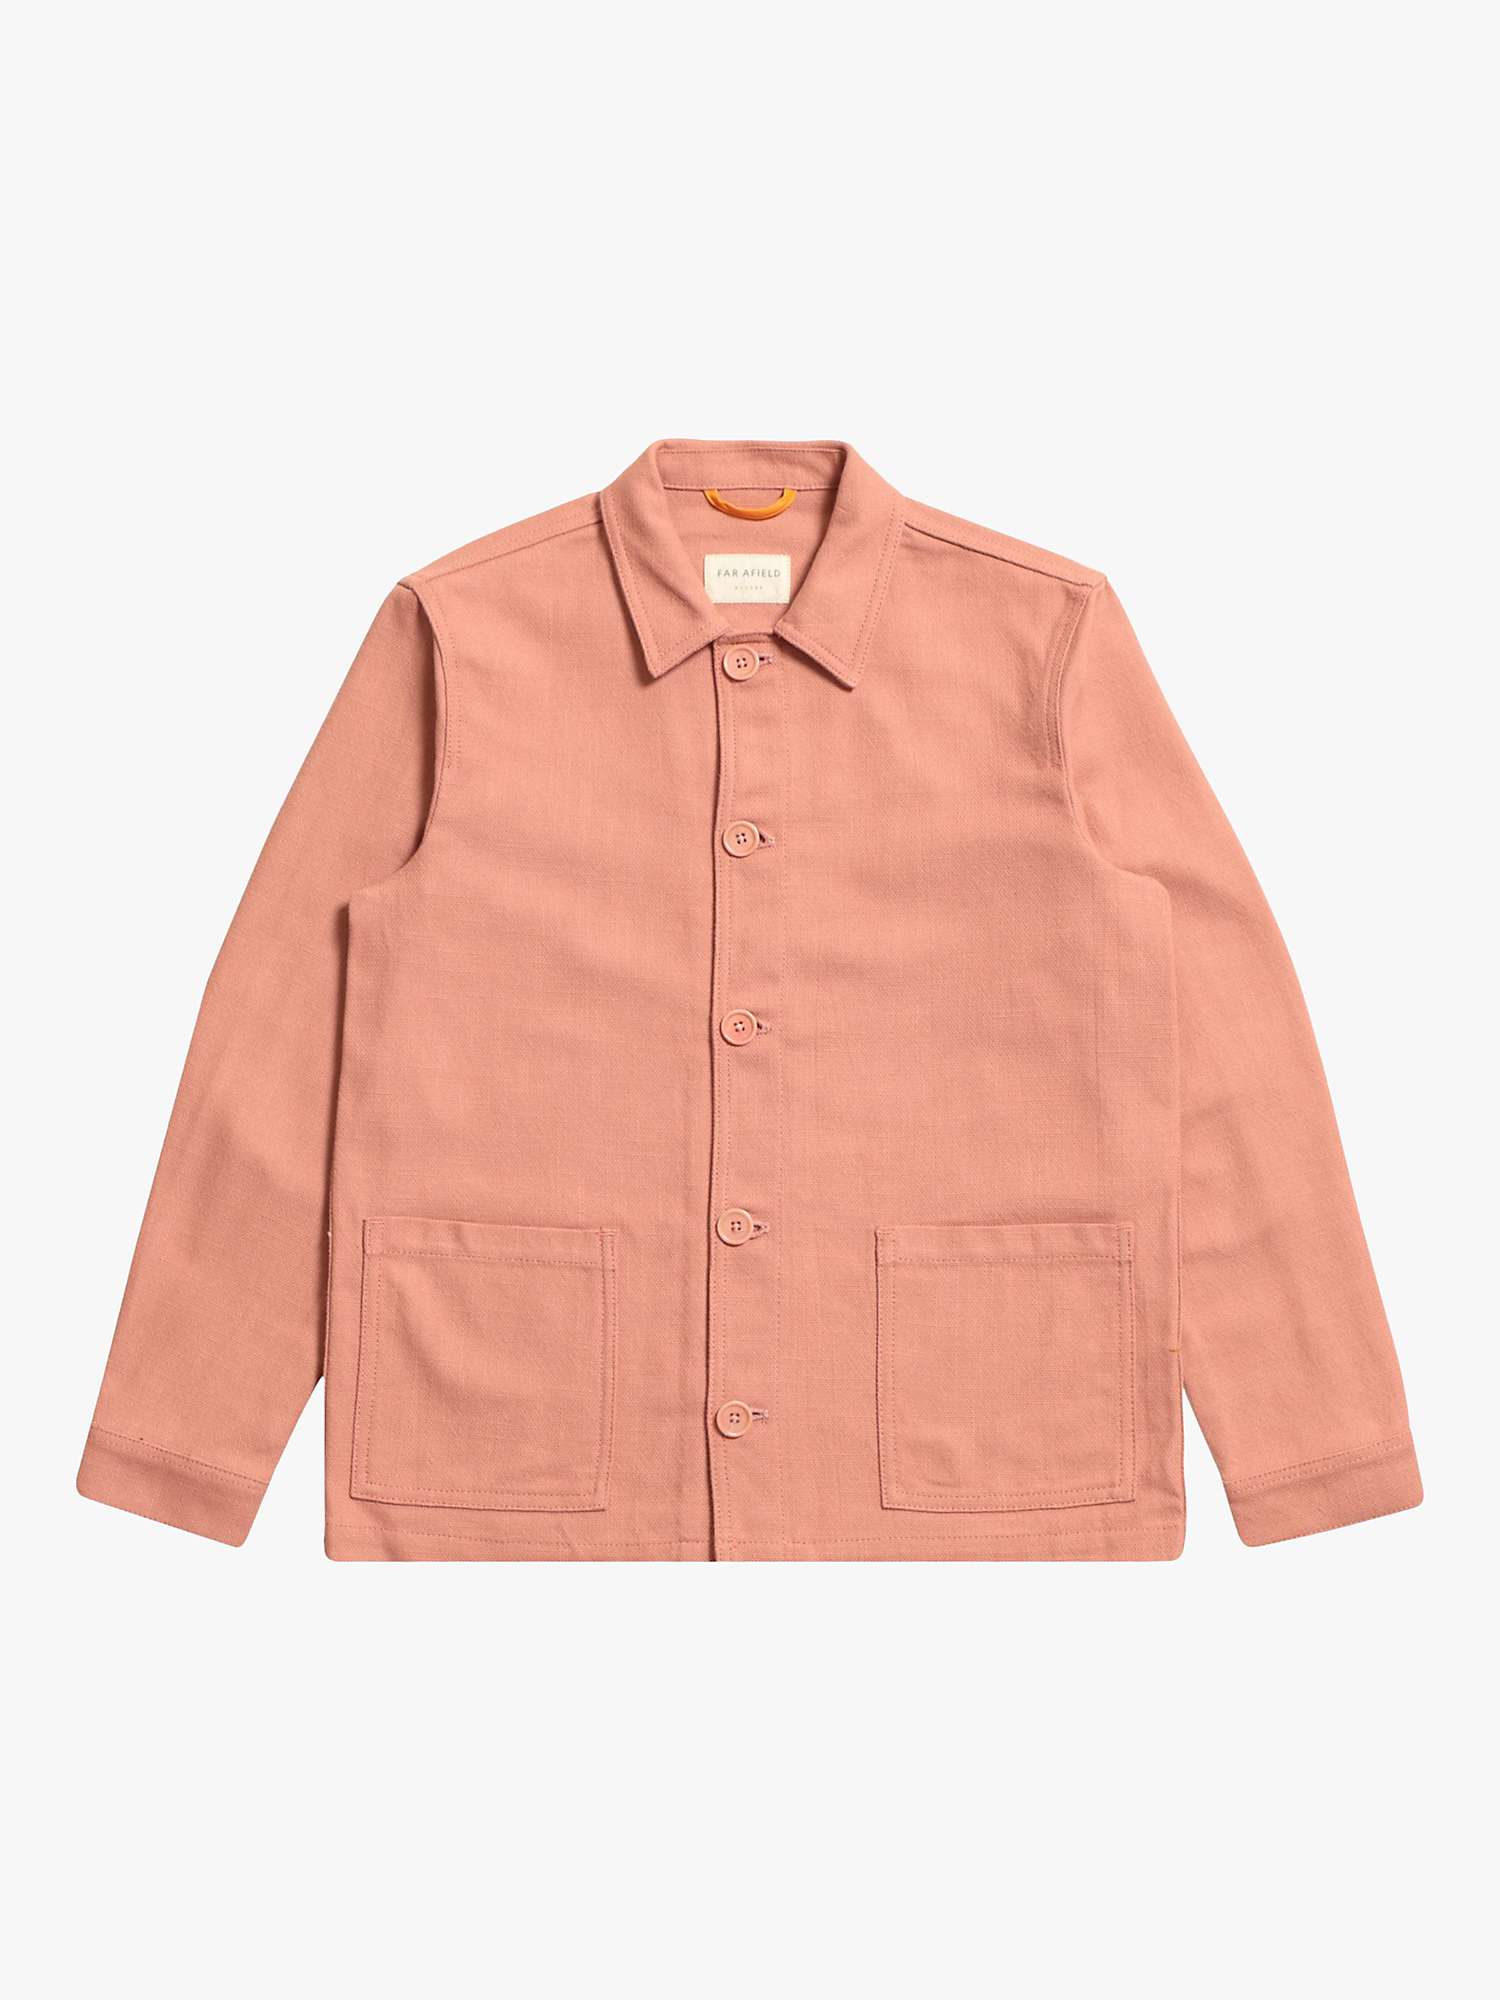 Buy Far Afield Bisset Long Sleeve Jacket, Mahogany Pink Online at johnlewis.com